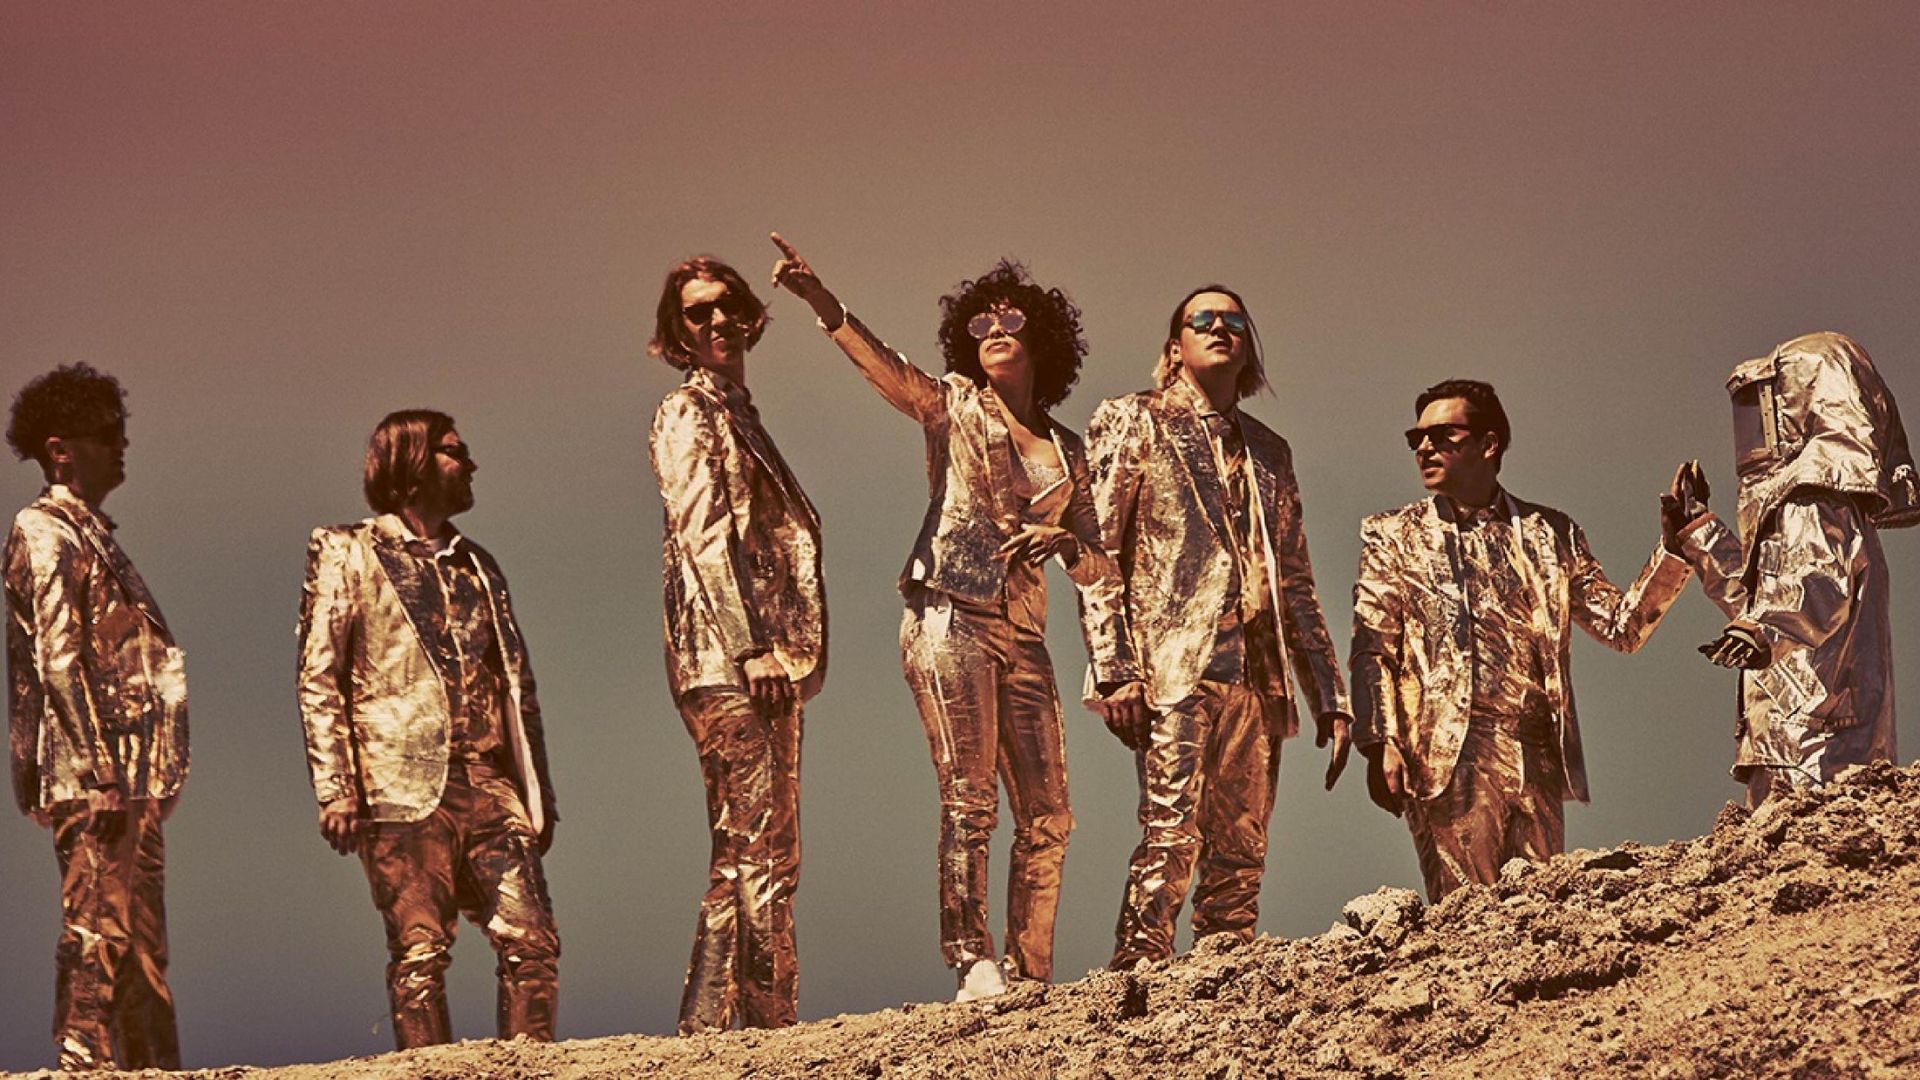 Arcade Fire continúa mostrando nuevo material con partituras y postales